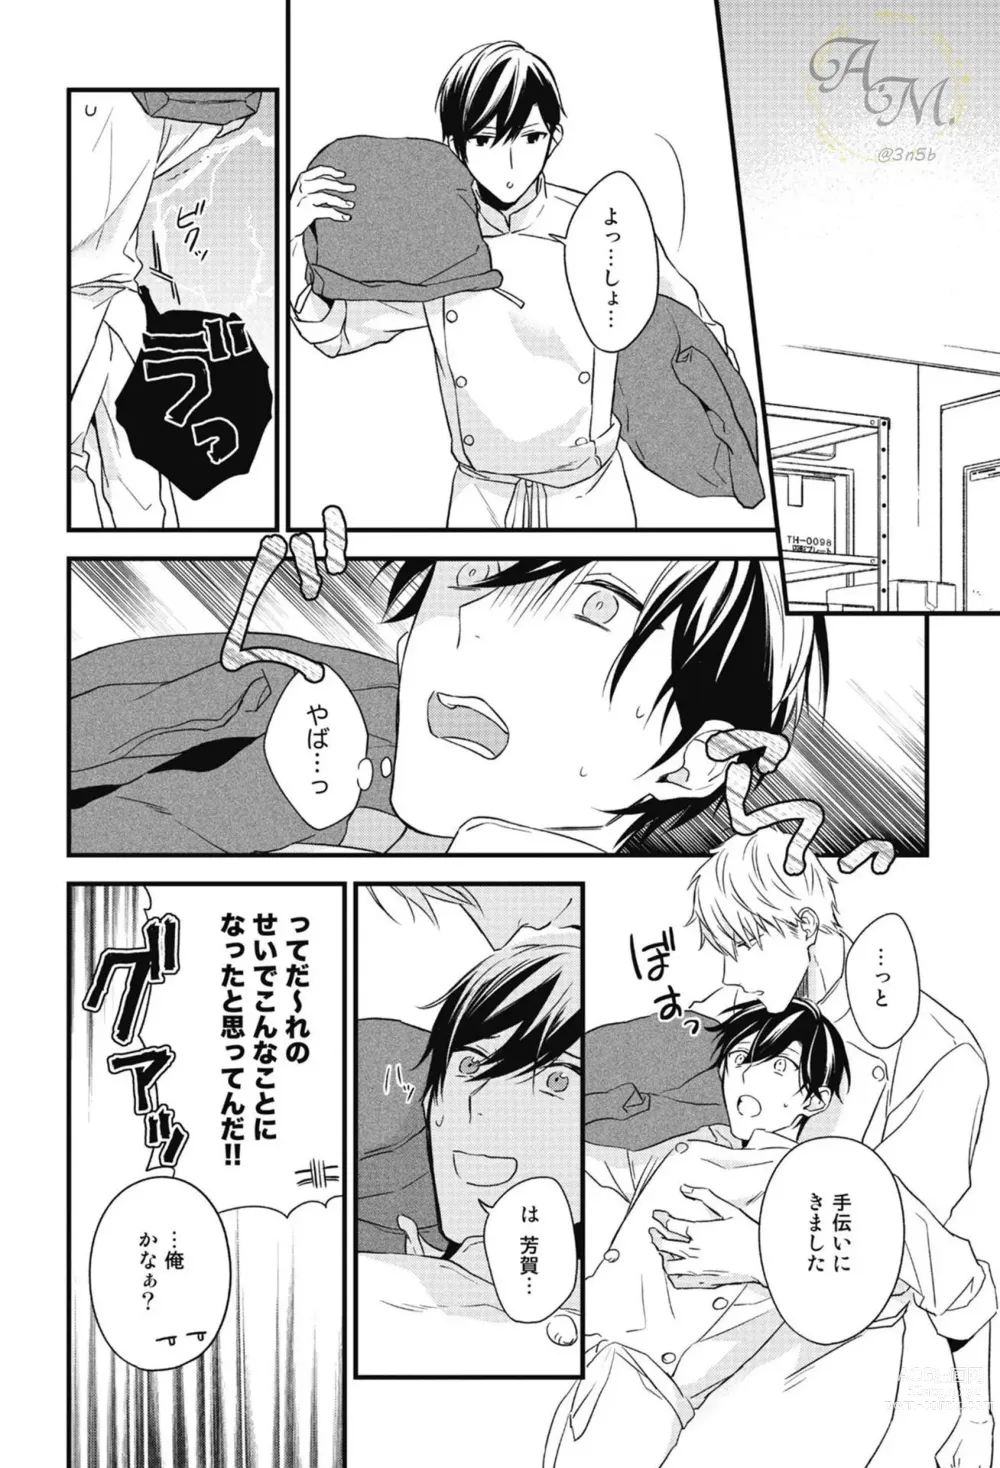 Page 150 of manga SWEET to Yobu ni wa Mada Hayai - Its still early to call a Sweet.